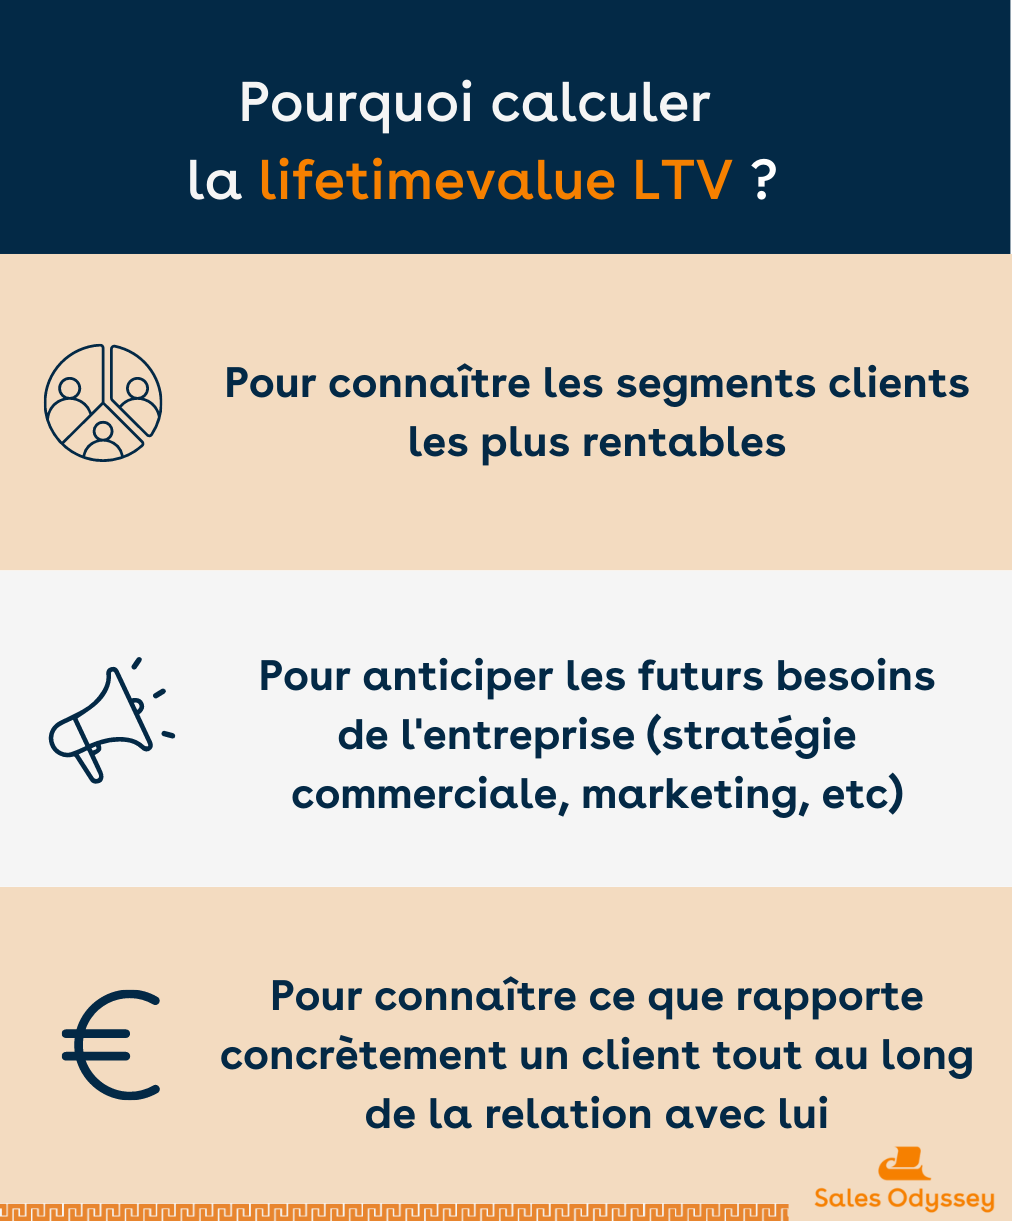 Pourquoi calculer la lifetime value LTV ?